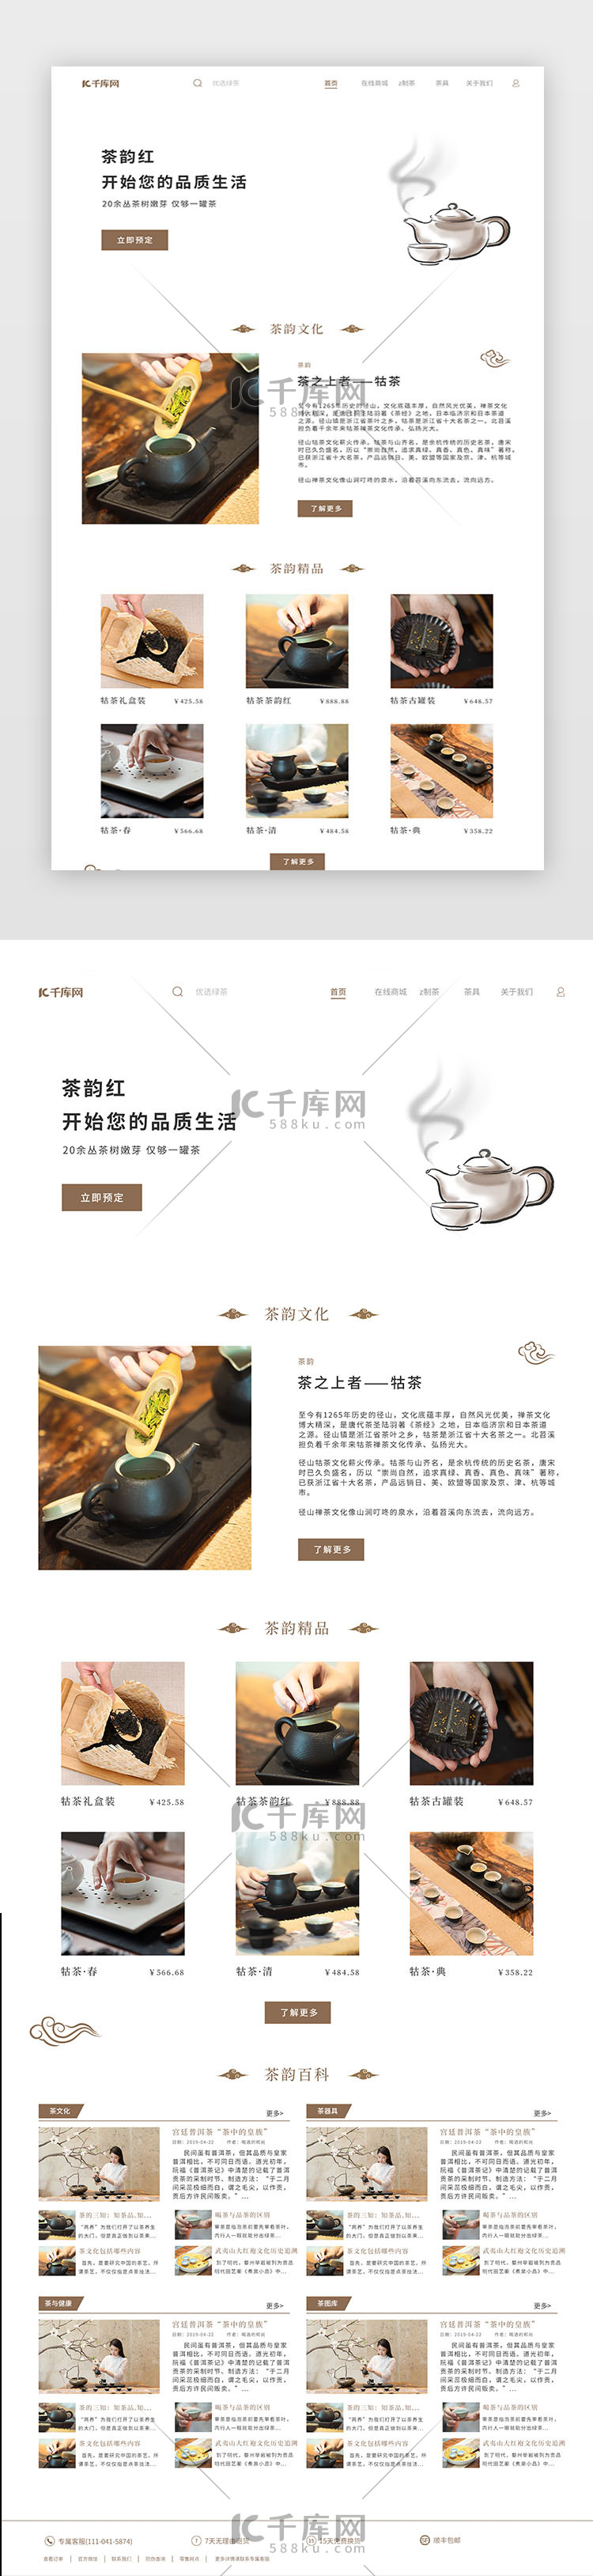 茶韵简约中国网站设计